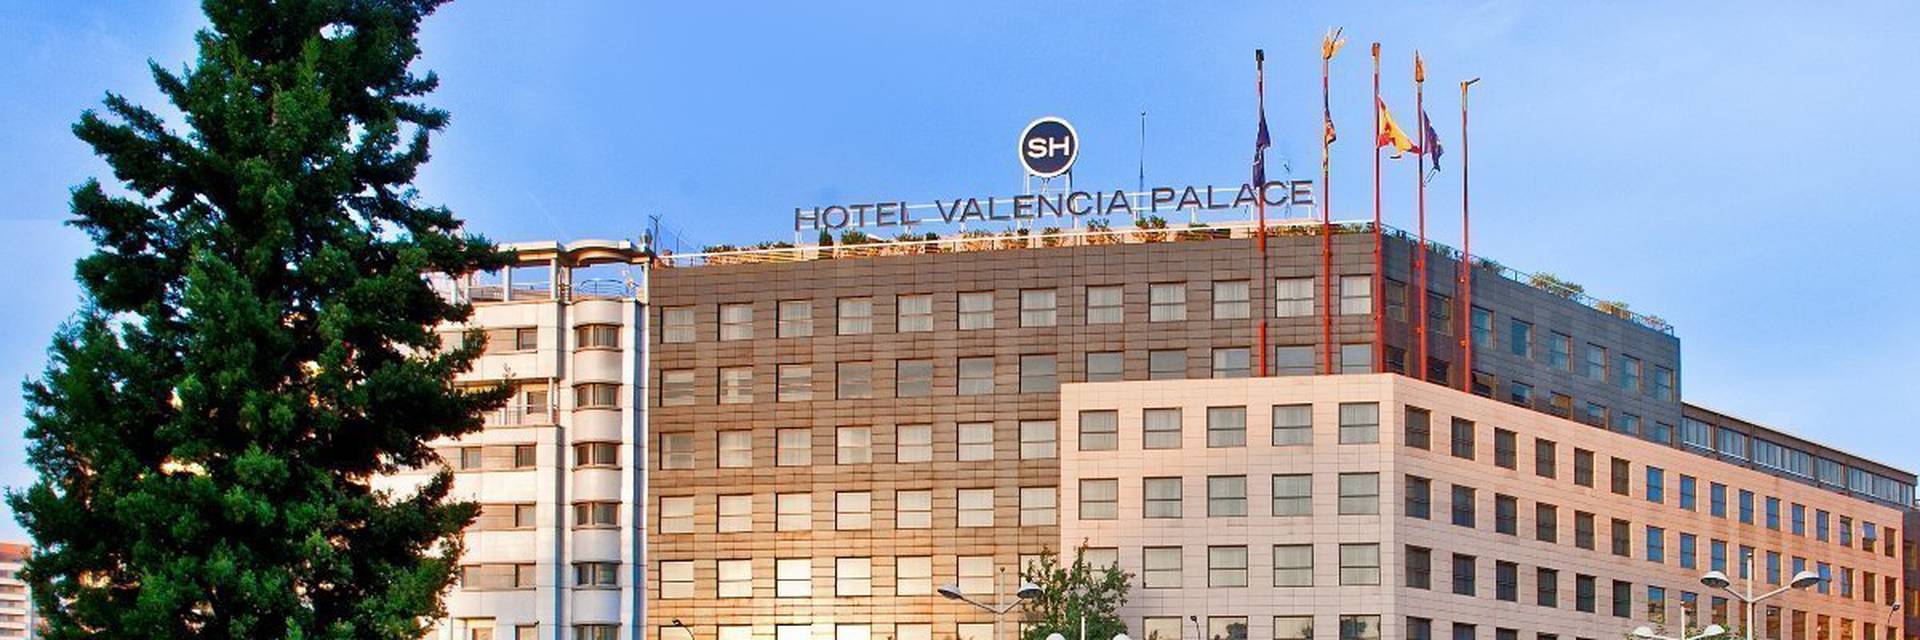 Sh valencia palace map Hotel SH Valencia Palace